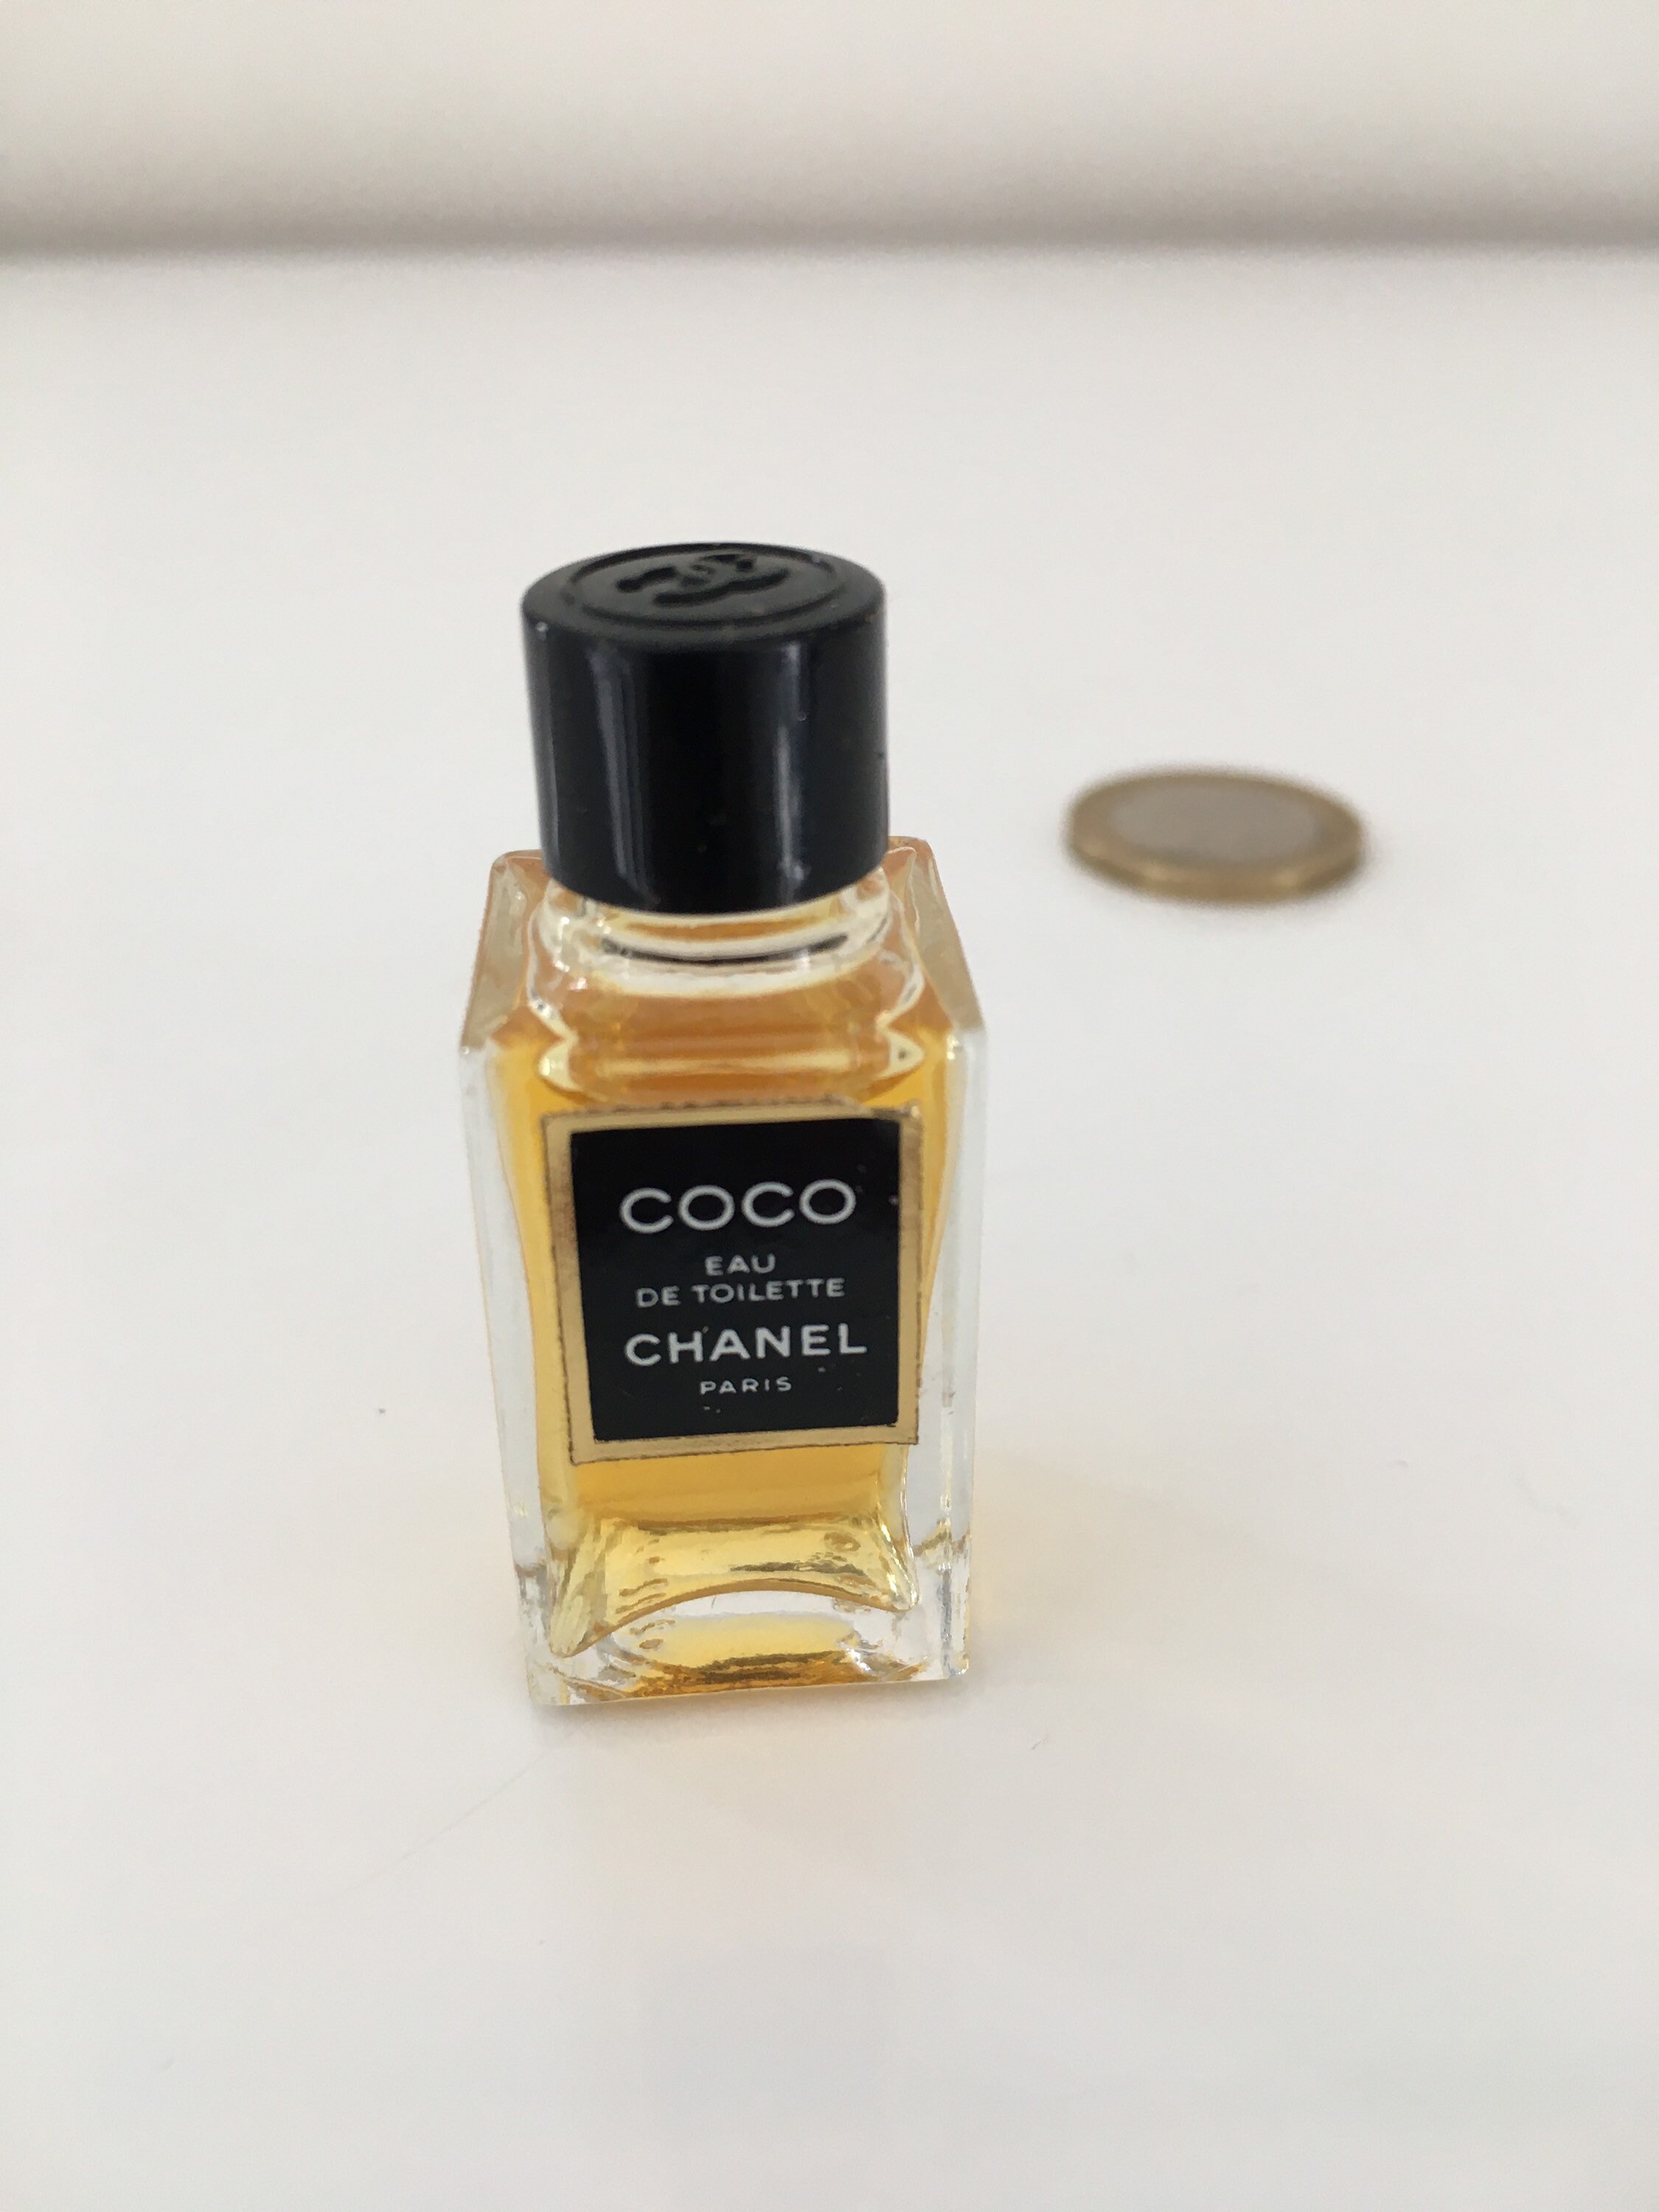 Vintage Chanel Coco Mademoiselle Mini Pure Perfume in Box 1.5 ml 0.05 oz  RARE